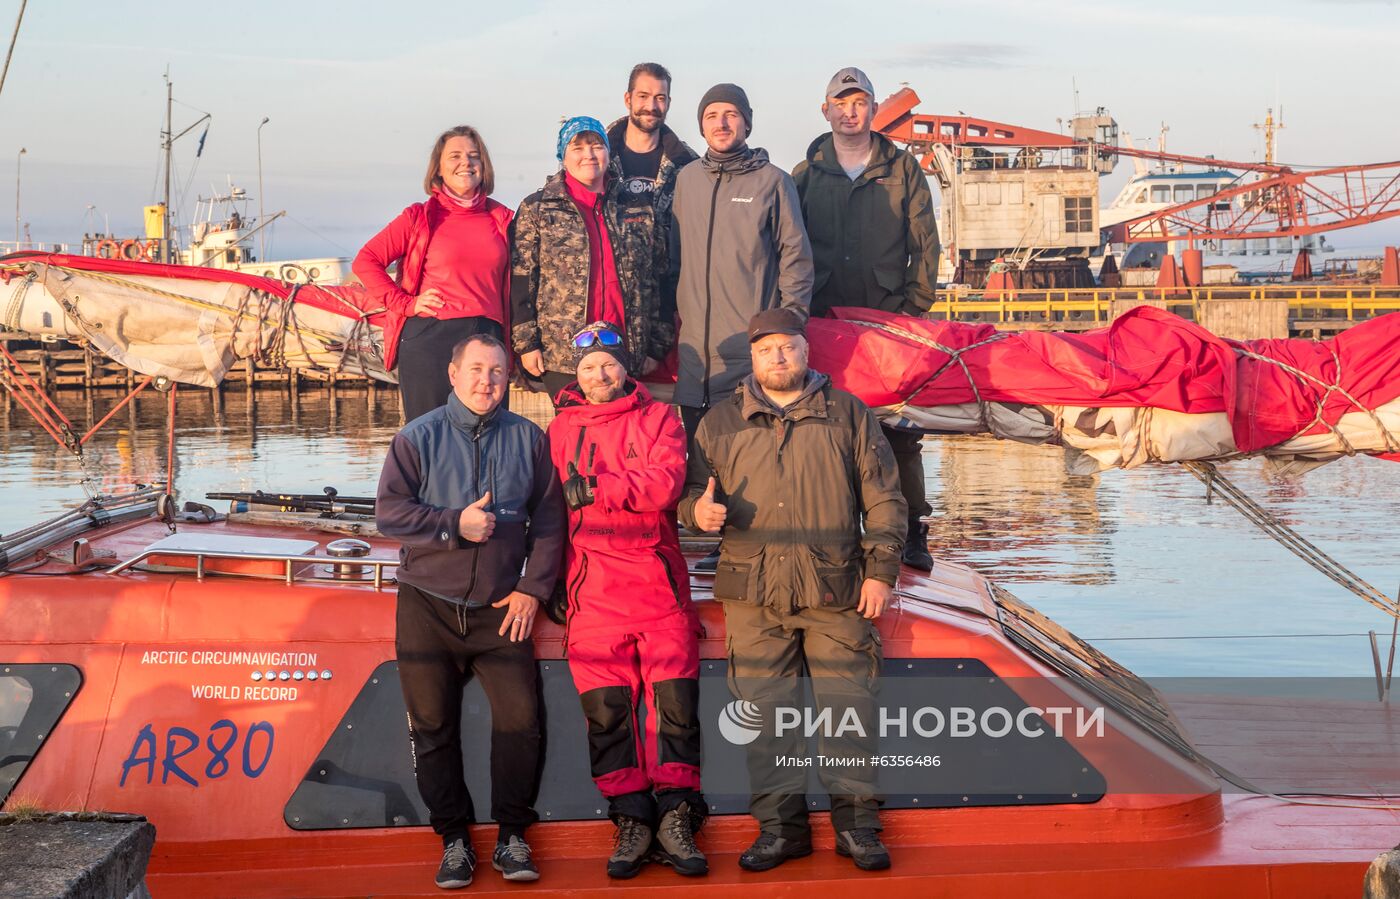 Экспедиция полярной яхты "Петр Первый"